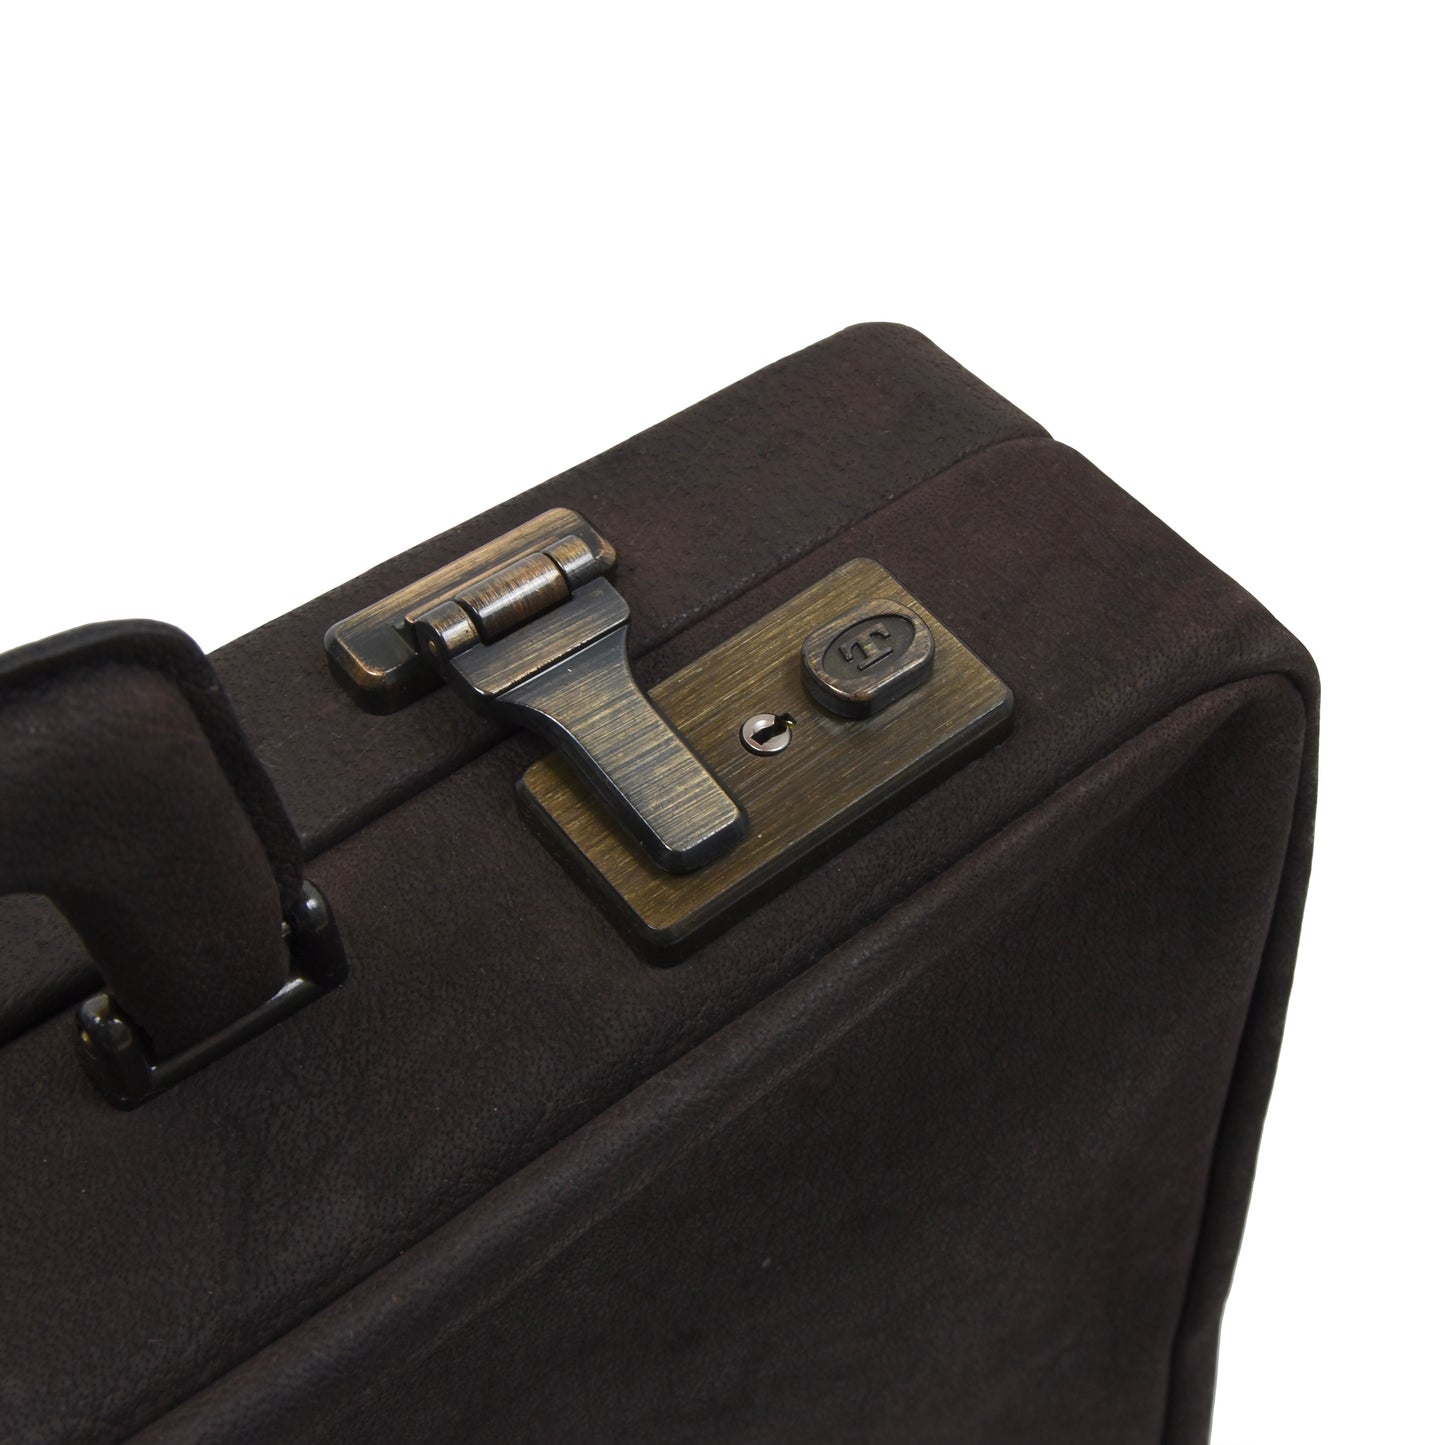 Traveller Jean Weipert Buffalo Briefcase - Brown